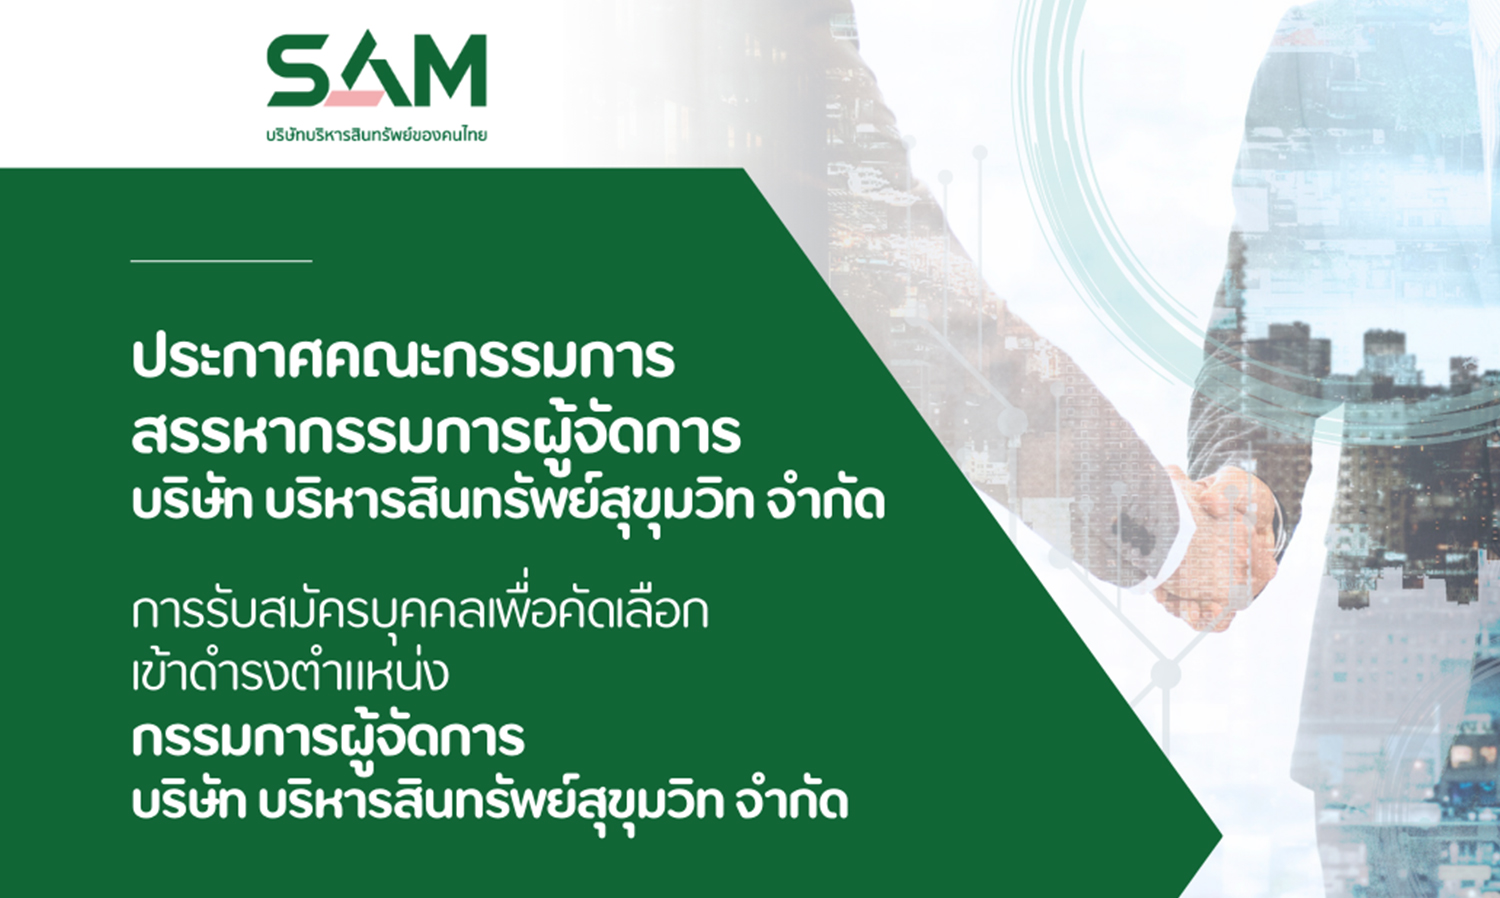 SAM บริษัทบริหารสินทรัพย์ของคนไทย เปิดรับสมัครบุคคลเพื่อดำรงตำแหน่งกรรมการผู้จัดการ ตั้งแต่บัดนี้ ถึง 16 กรกฎาคม 2566